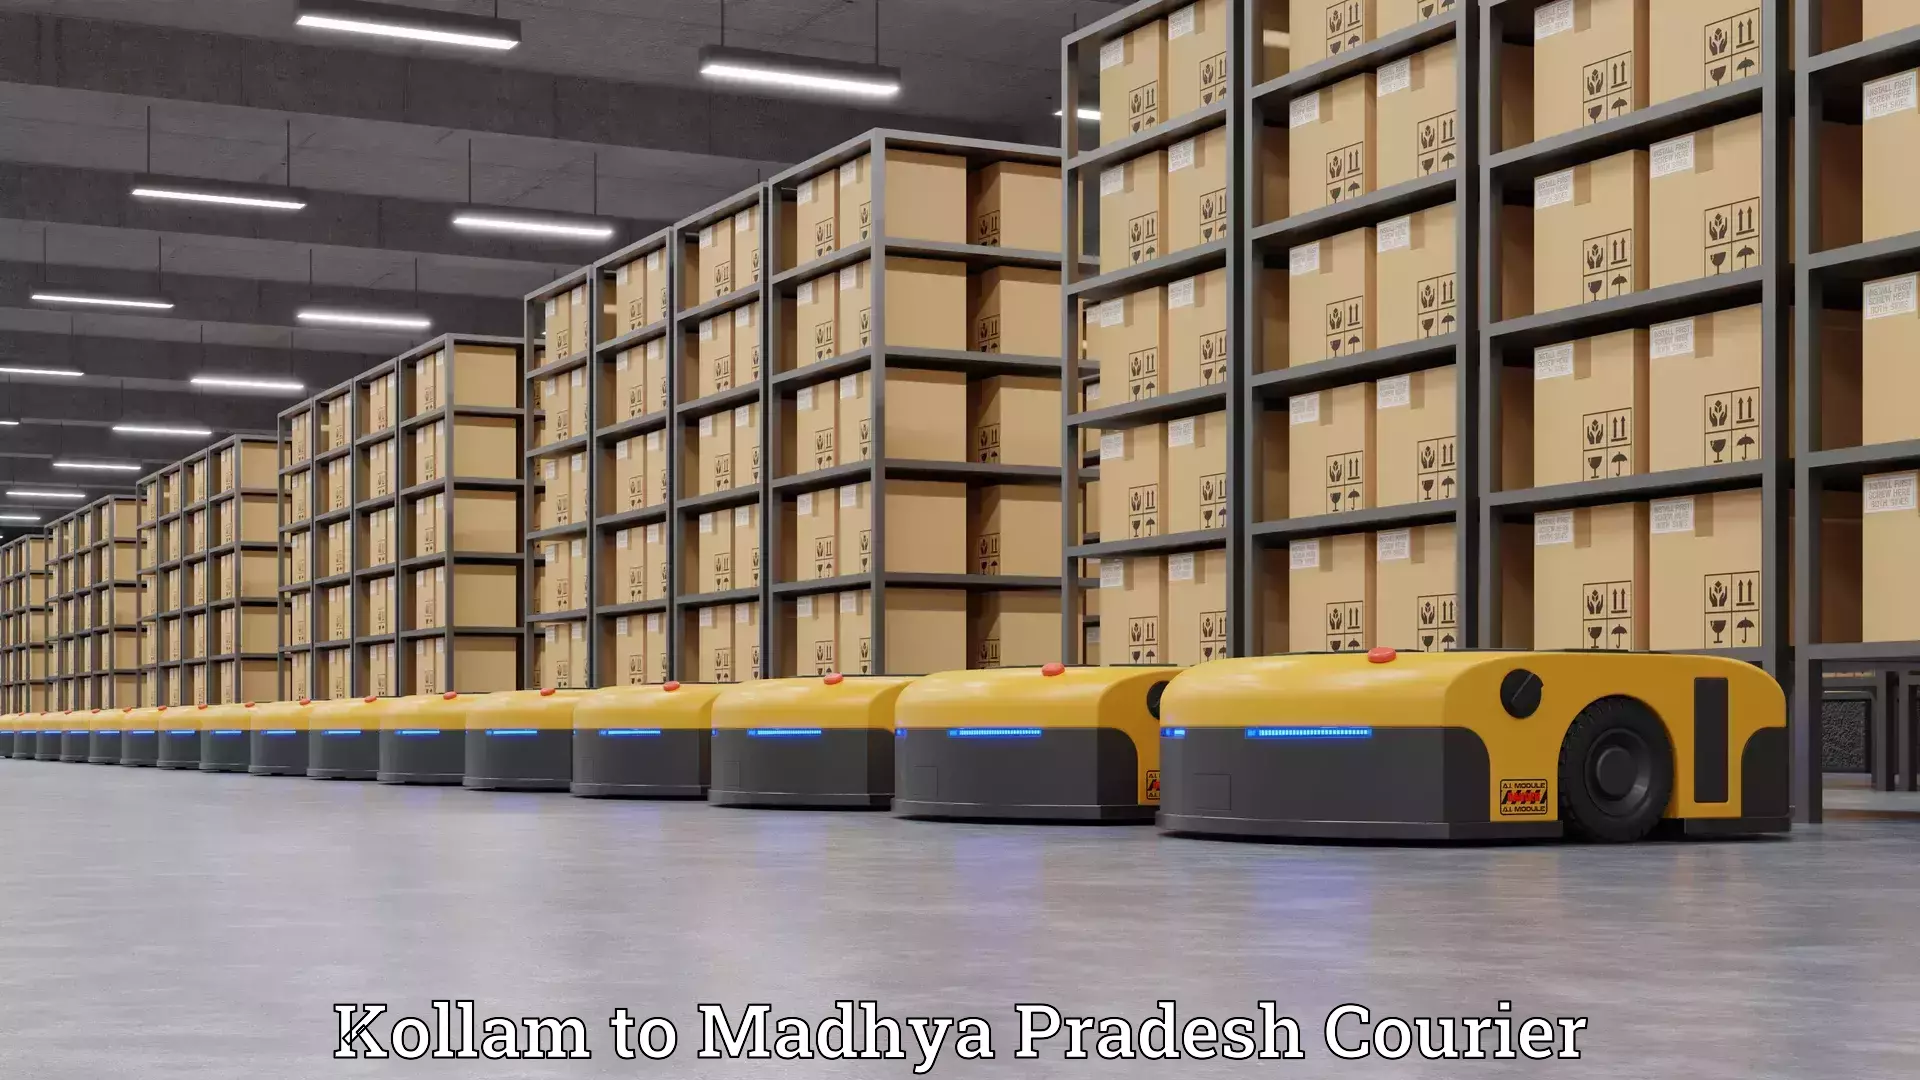 Furniture relocation experts Kollam to Madhya Pradesh